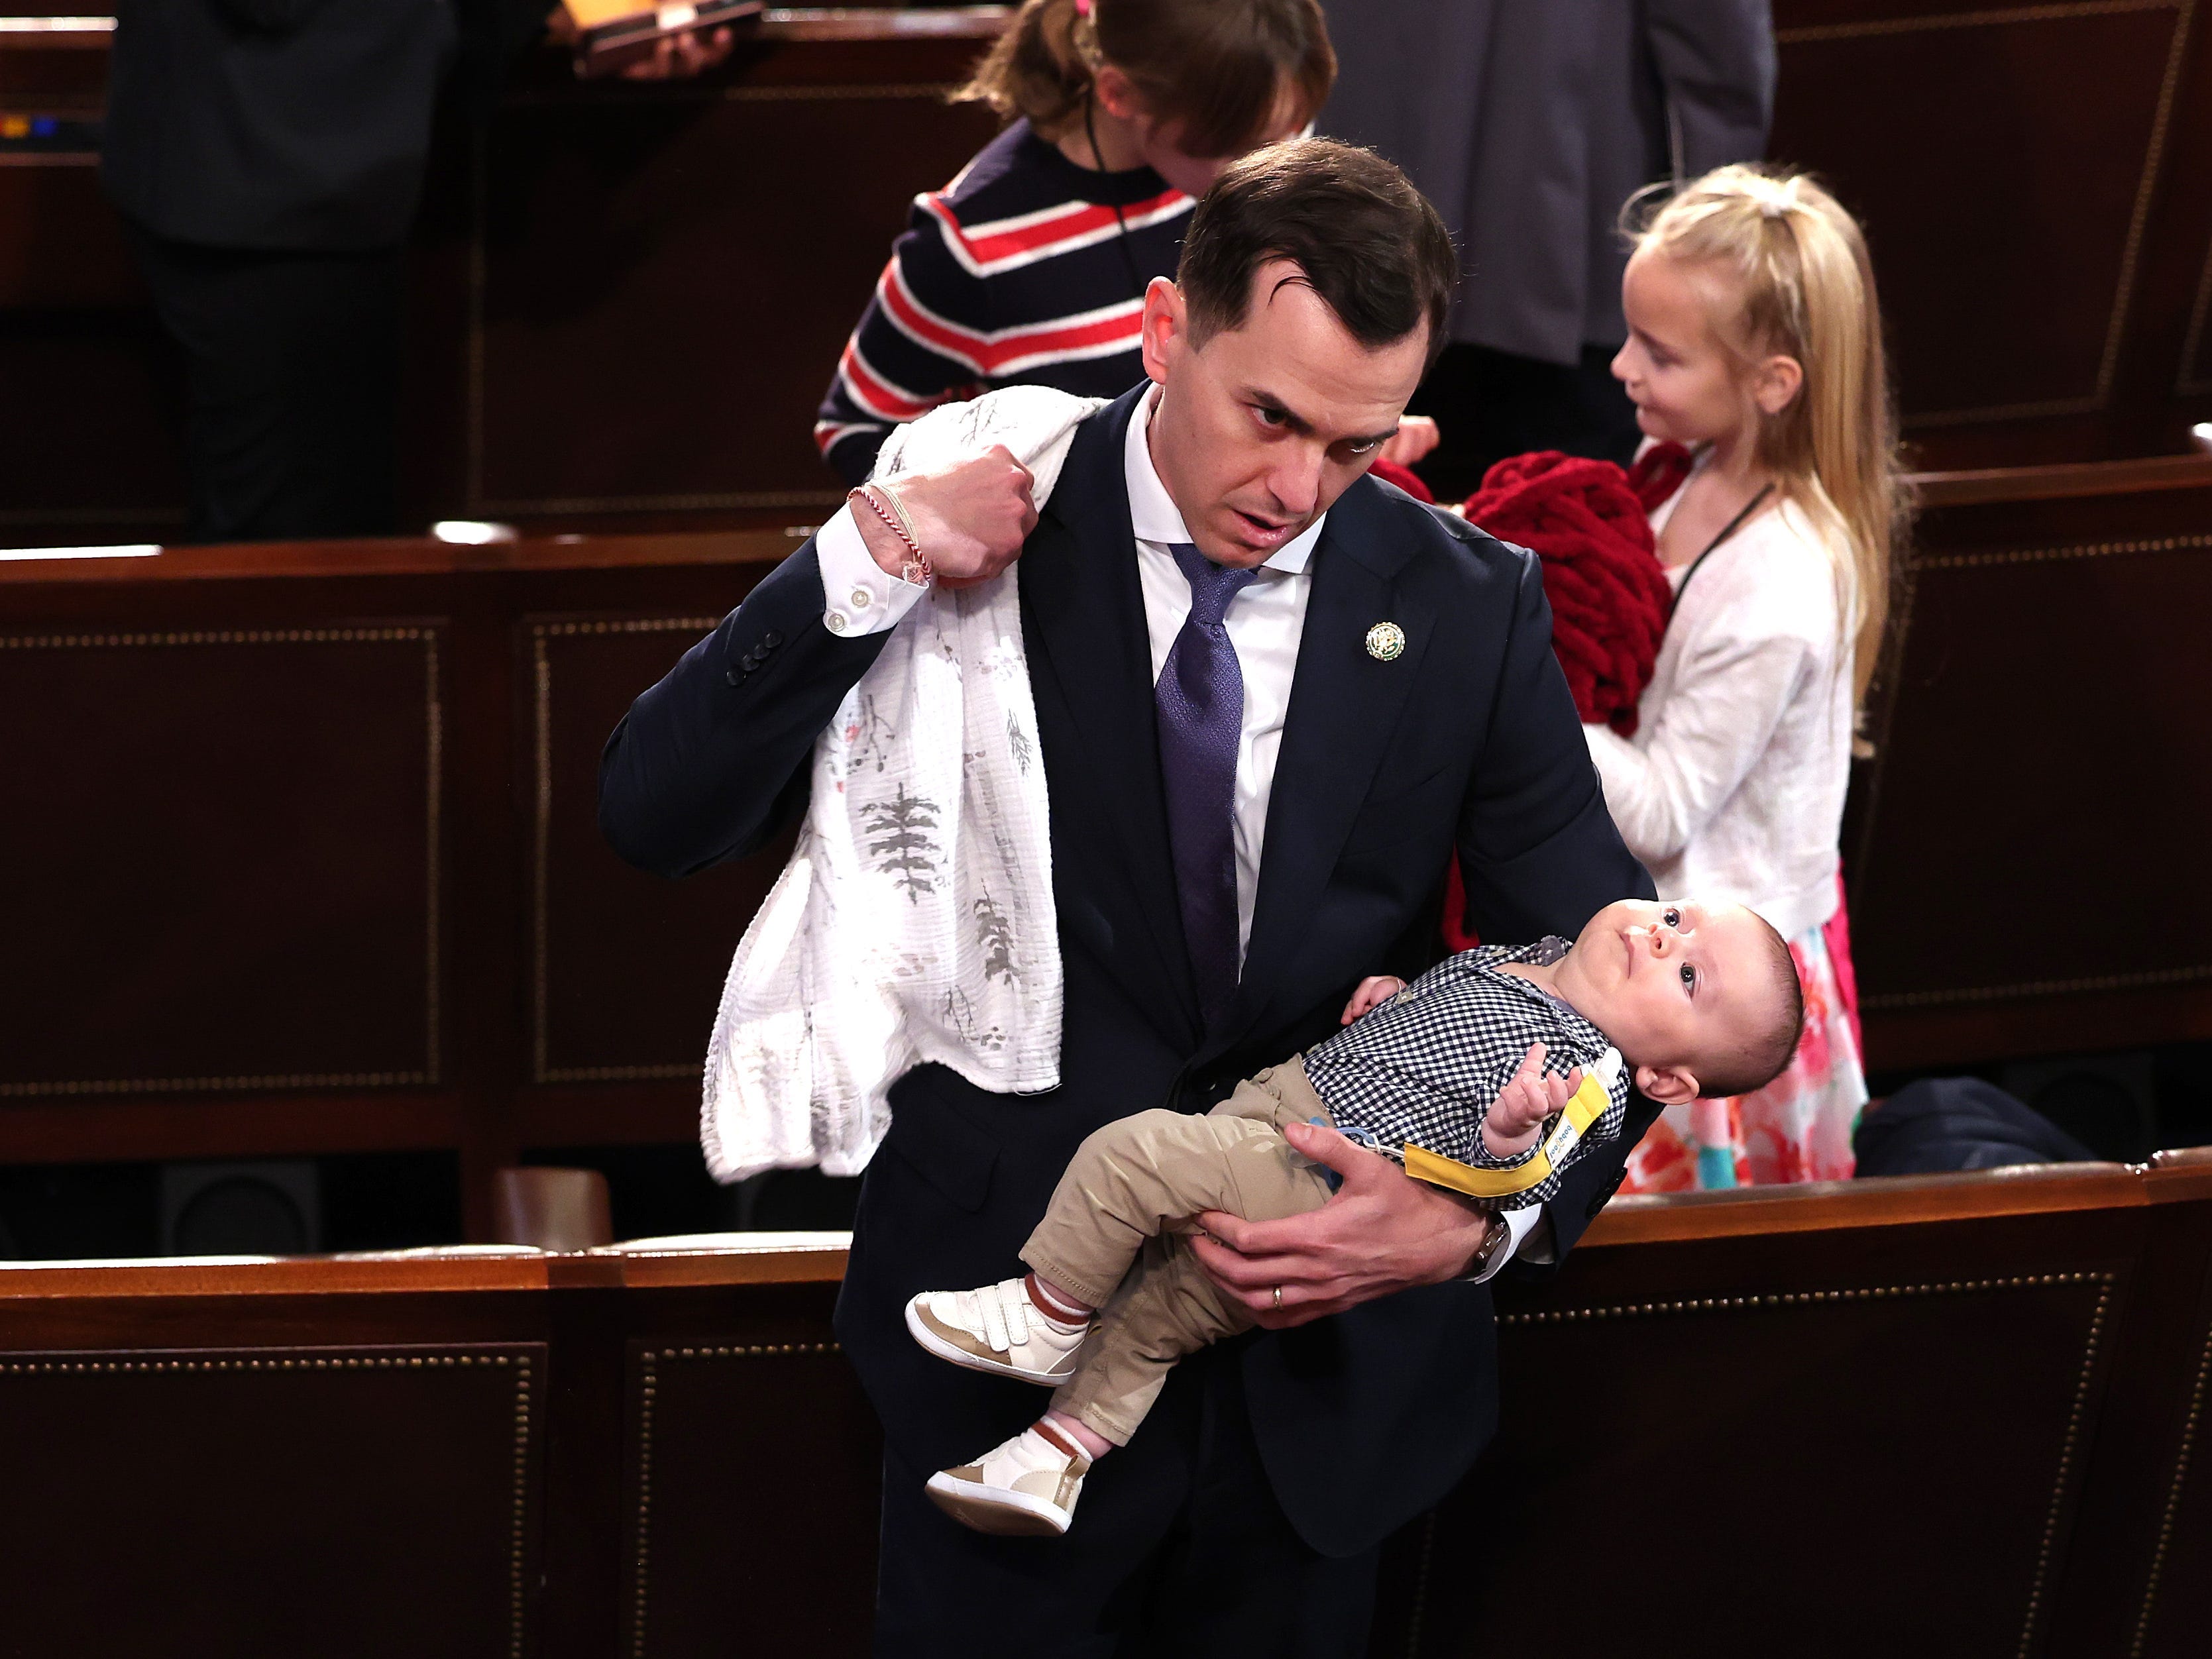 Der neue US-Abgeordnete Robert Menendez Jr. (D-NJ) hält seinen Sohn Robert fest, während seine Tochter Olivia am ersten Tag des 118. Kongresses in der Kammer des US-Kapitols am 03. Januar 2023 in Washington in der Nähe sitzt. Gleichstrom.